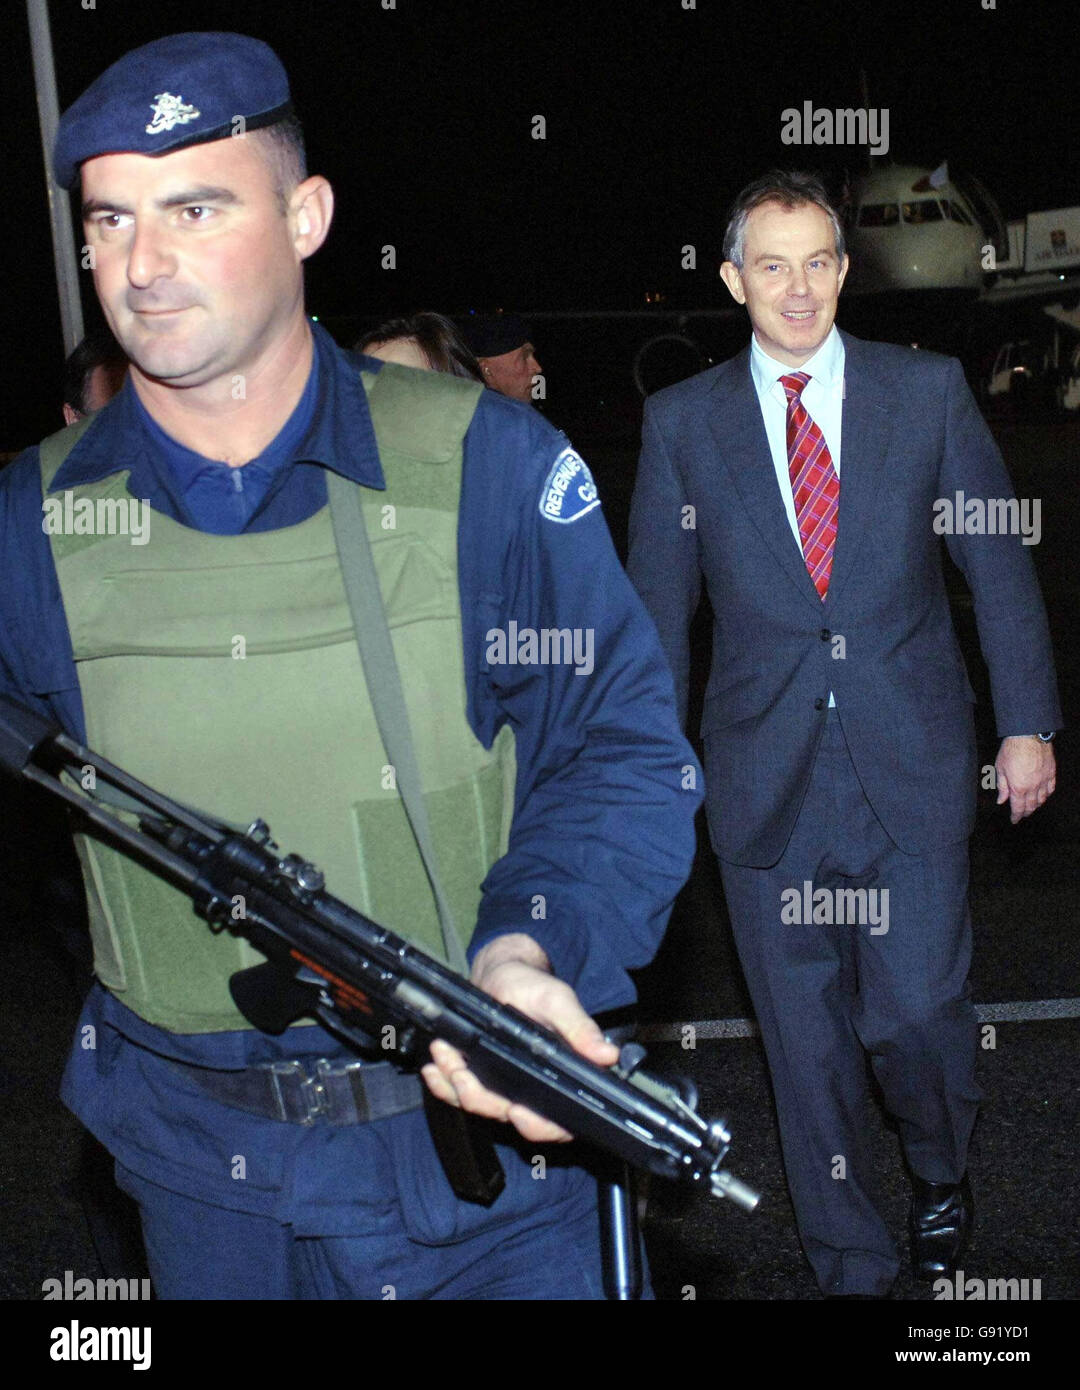 Der britische Premierminister Tony Blair kommt am Donnerstag, den 24. November 2005, in Malta an und ist sicher für das morgige Treffen der Staats- und Regierungschefs des Commonwealth. Siehe PA Story POLITIK Blair. DRÜCKEN Sie VERBANDSFOTO. Bildnachweis sollte lauten: PA. Stockfoto